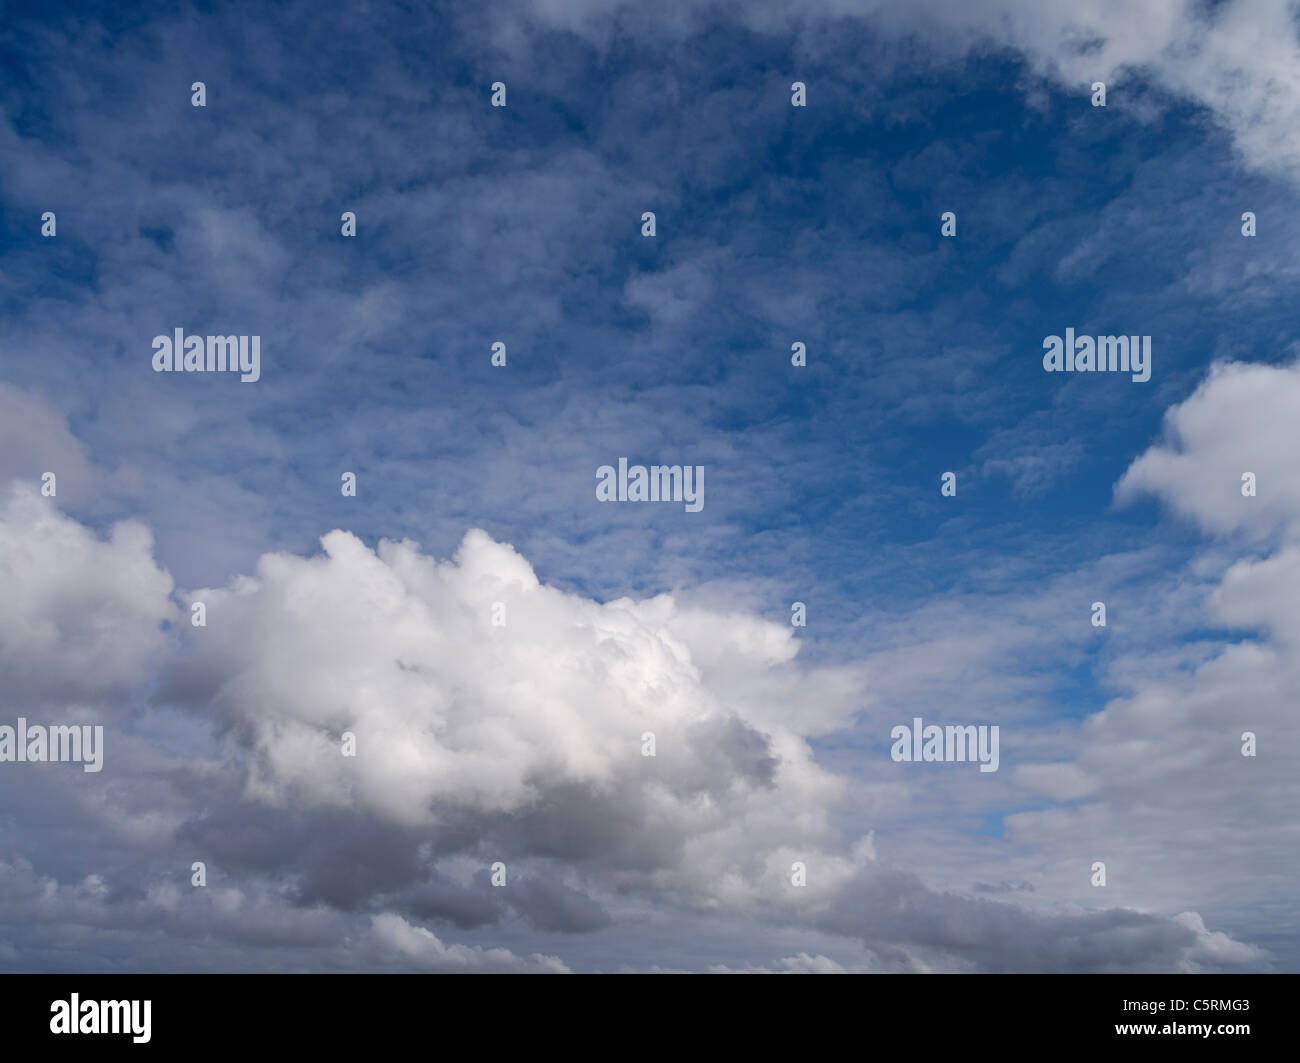 dh HIMMEL WETTER Weiße Wolken über blauem Himmel gesprenkelte, geschwollene Skyscape mit flüsteriger Wolkenlandschaft Stockfoto